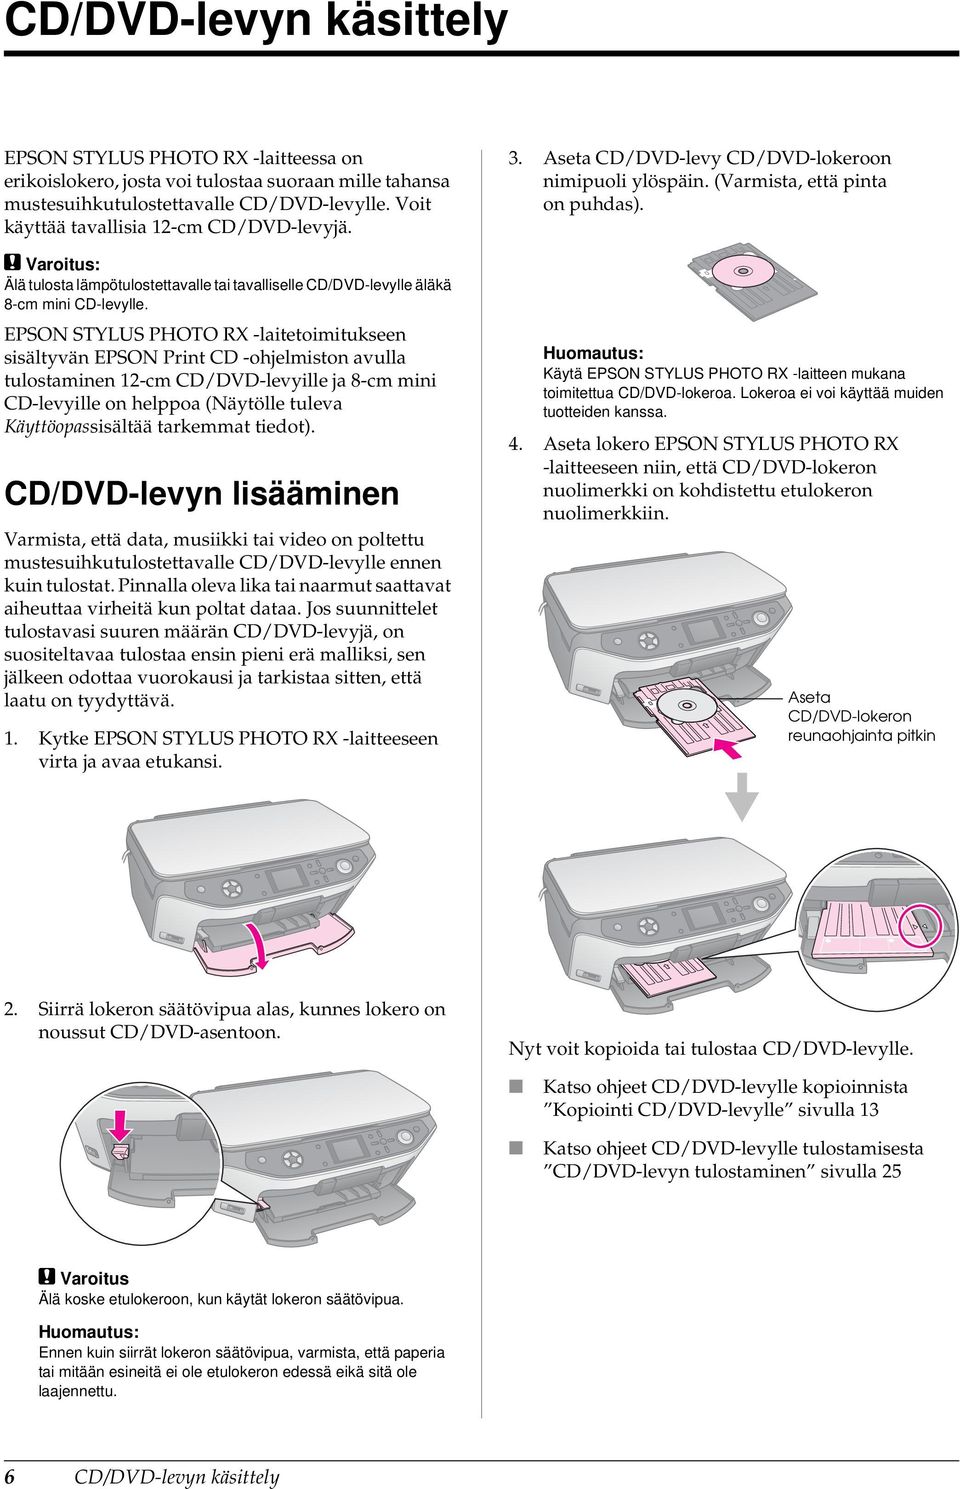 EPSON STYLUS PHOTO RX -laitetoimitukseen sisältyvän EPSON Print CD -ohjelmiston avulla tulostaminen 12-cm CD/DVD-levyille ja 8-cm mini CD-levyille on helppoa (Näytölle tuleva Käyttöopassisältää